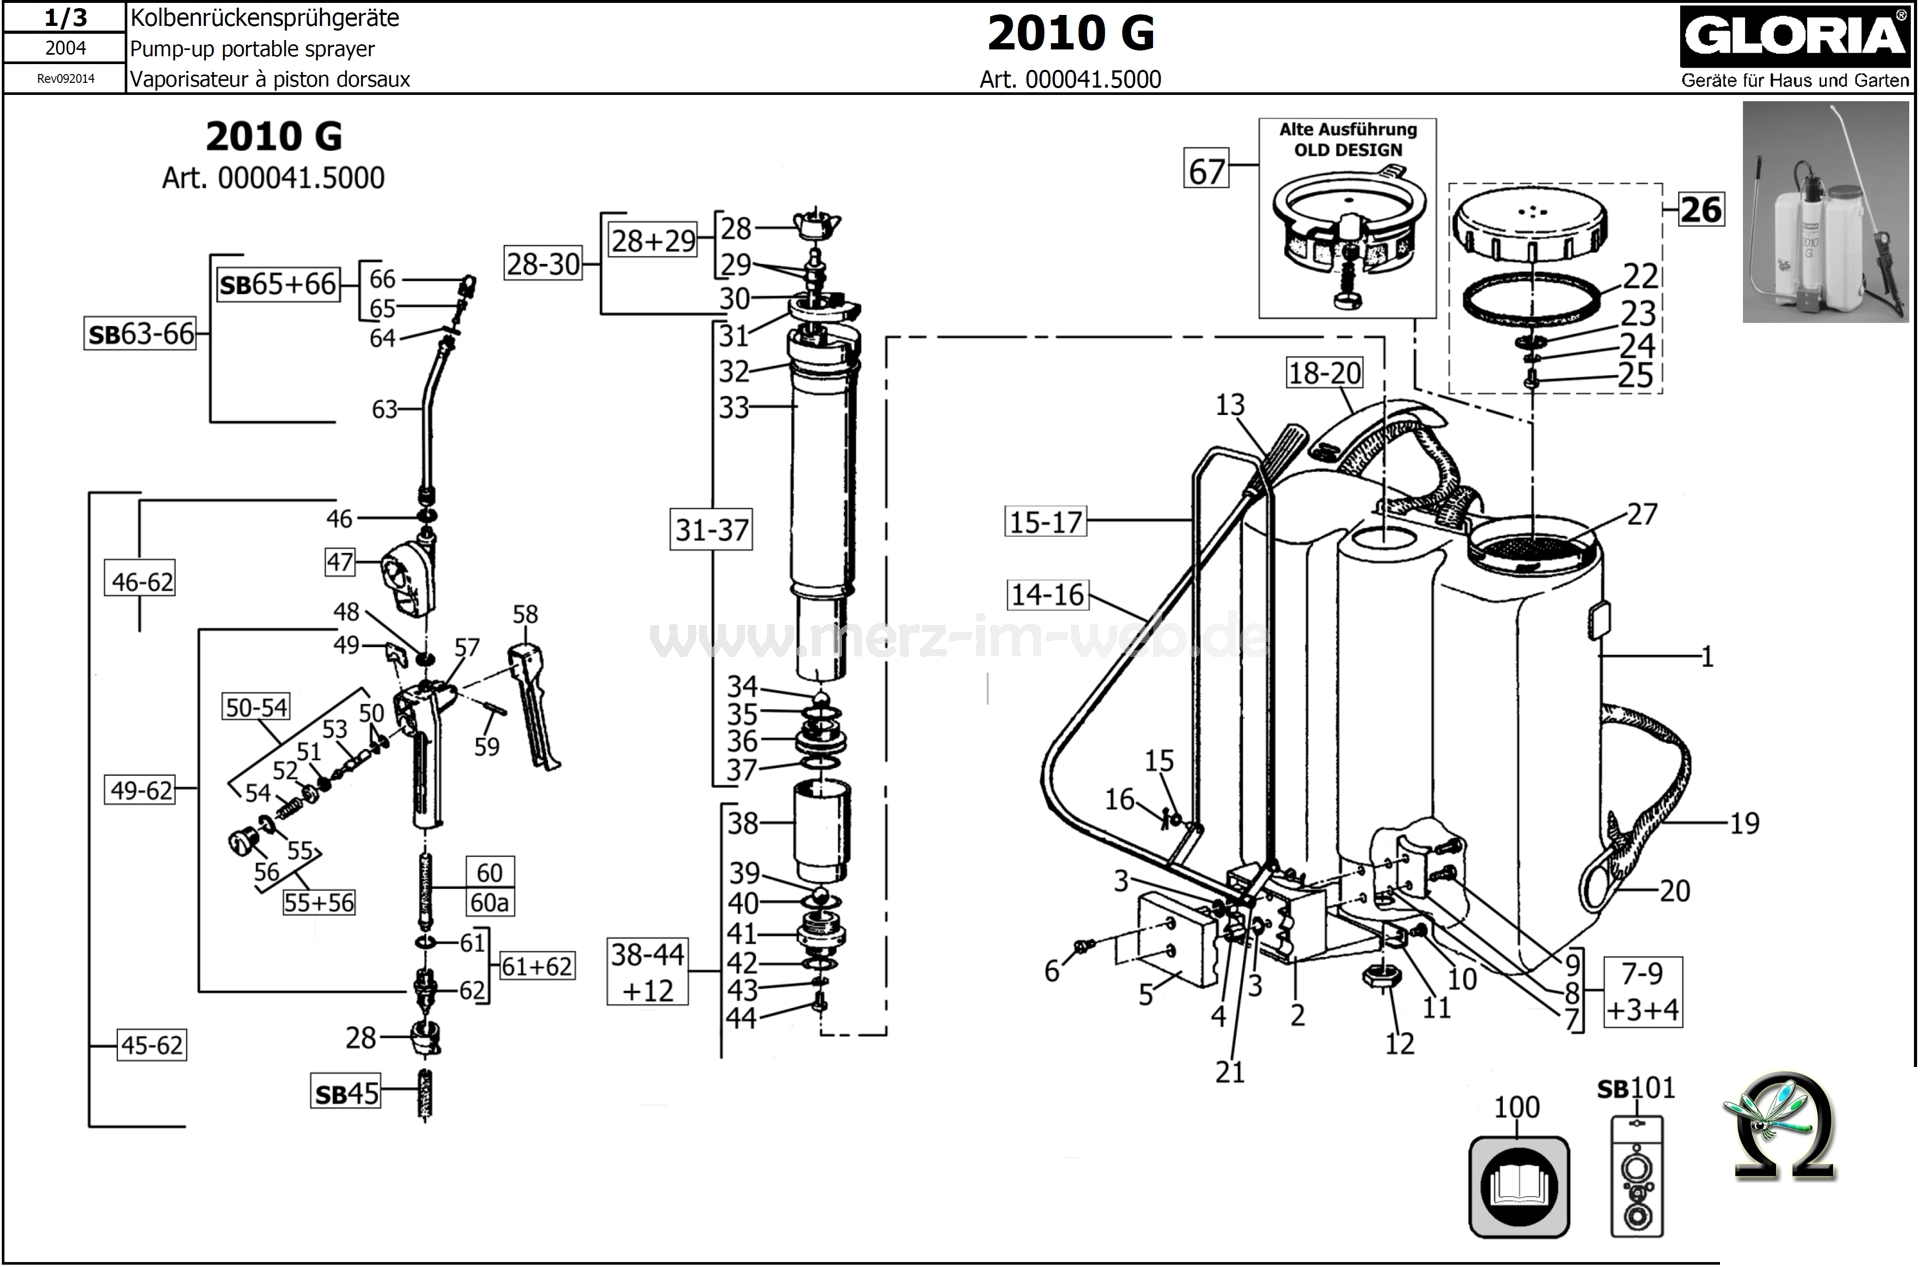 Die Ersatzteilzeichnung mit der Teileliste für das Kolbenrückensprühgerät Gloria 2010 G zum herunterladen und ausdrucken.